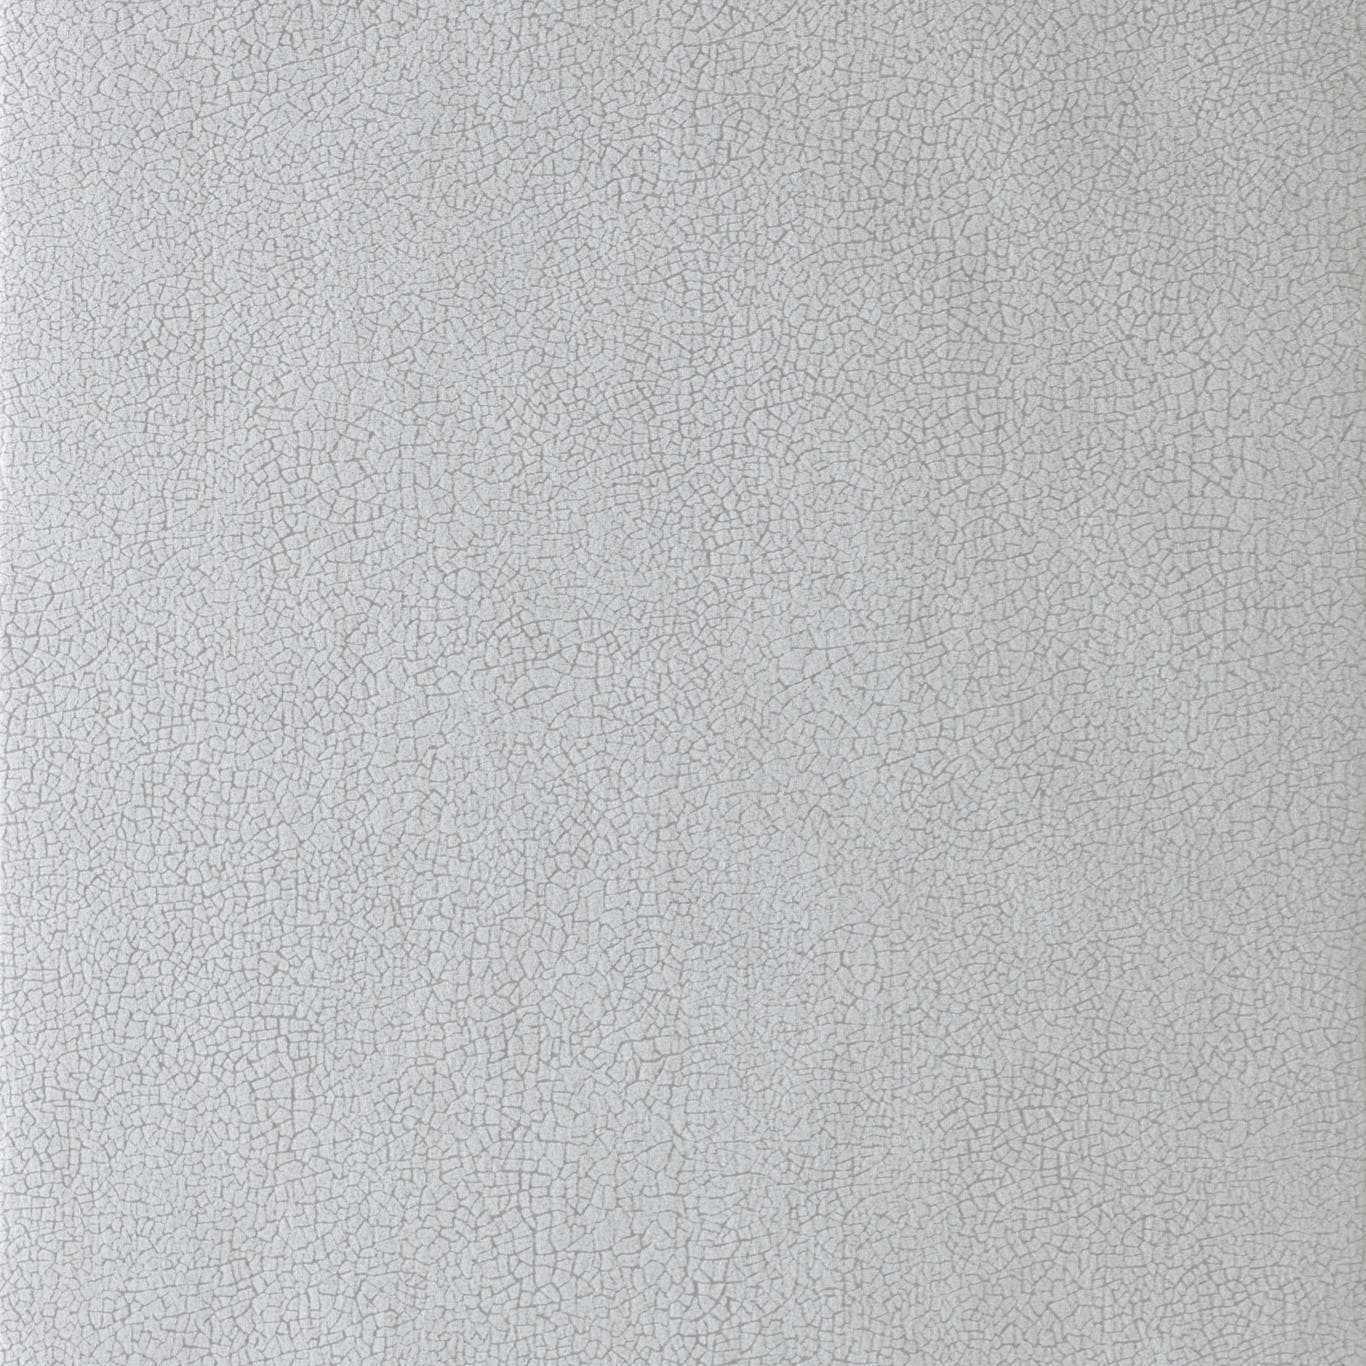 Anthology Igneous Quartz Wallpaper by HAR